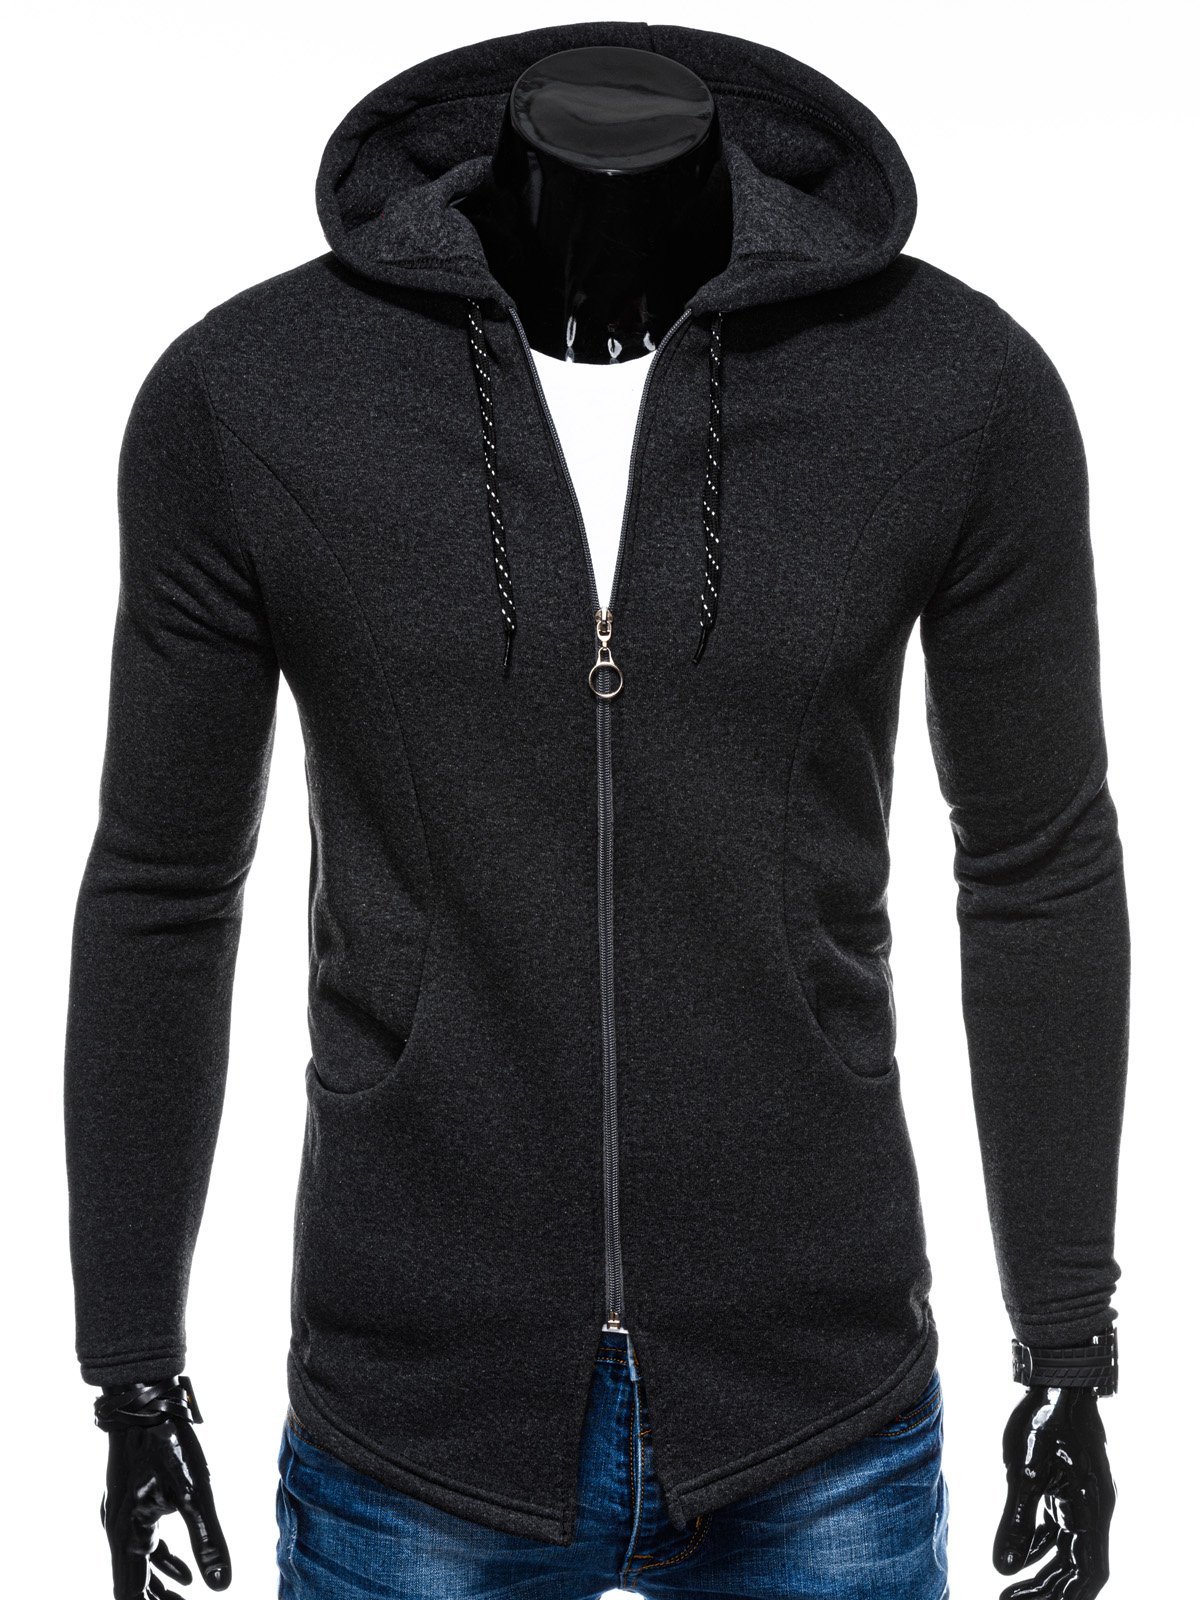 Men's zip-up sweatshirt B1167 - dark grey/melange | MODONE wholesale ...